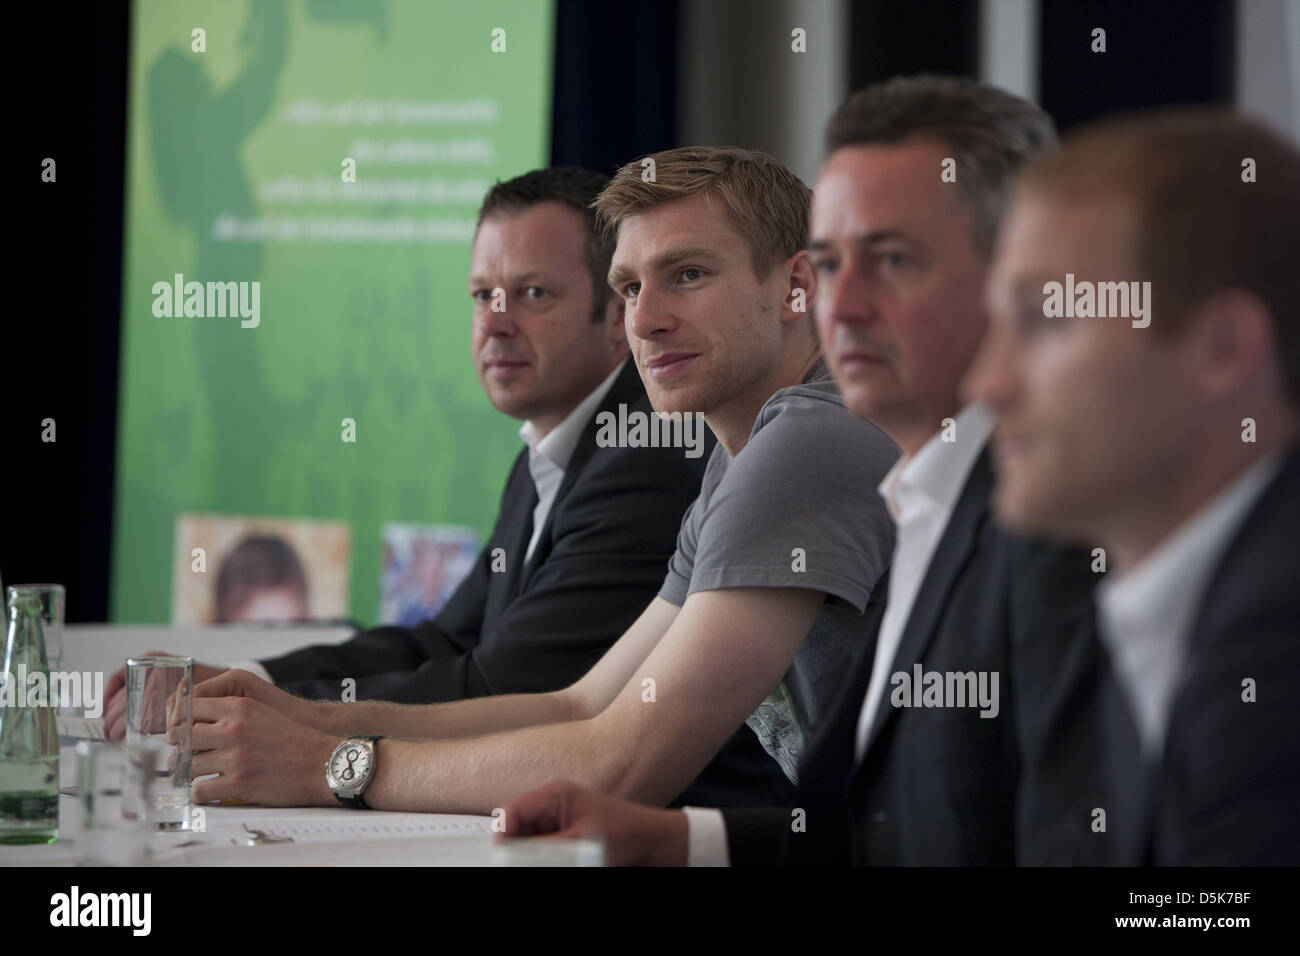 Per Mertesacker, Matthias Uelschen, Jan Bassler, match Joerg Borm auf einer Pressekonferenz für die Charity Mertesacker & Pocher Stockfoto